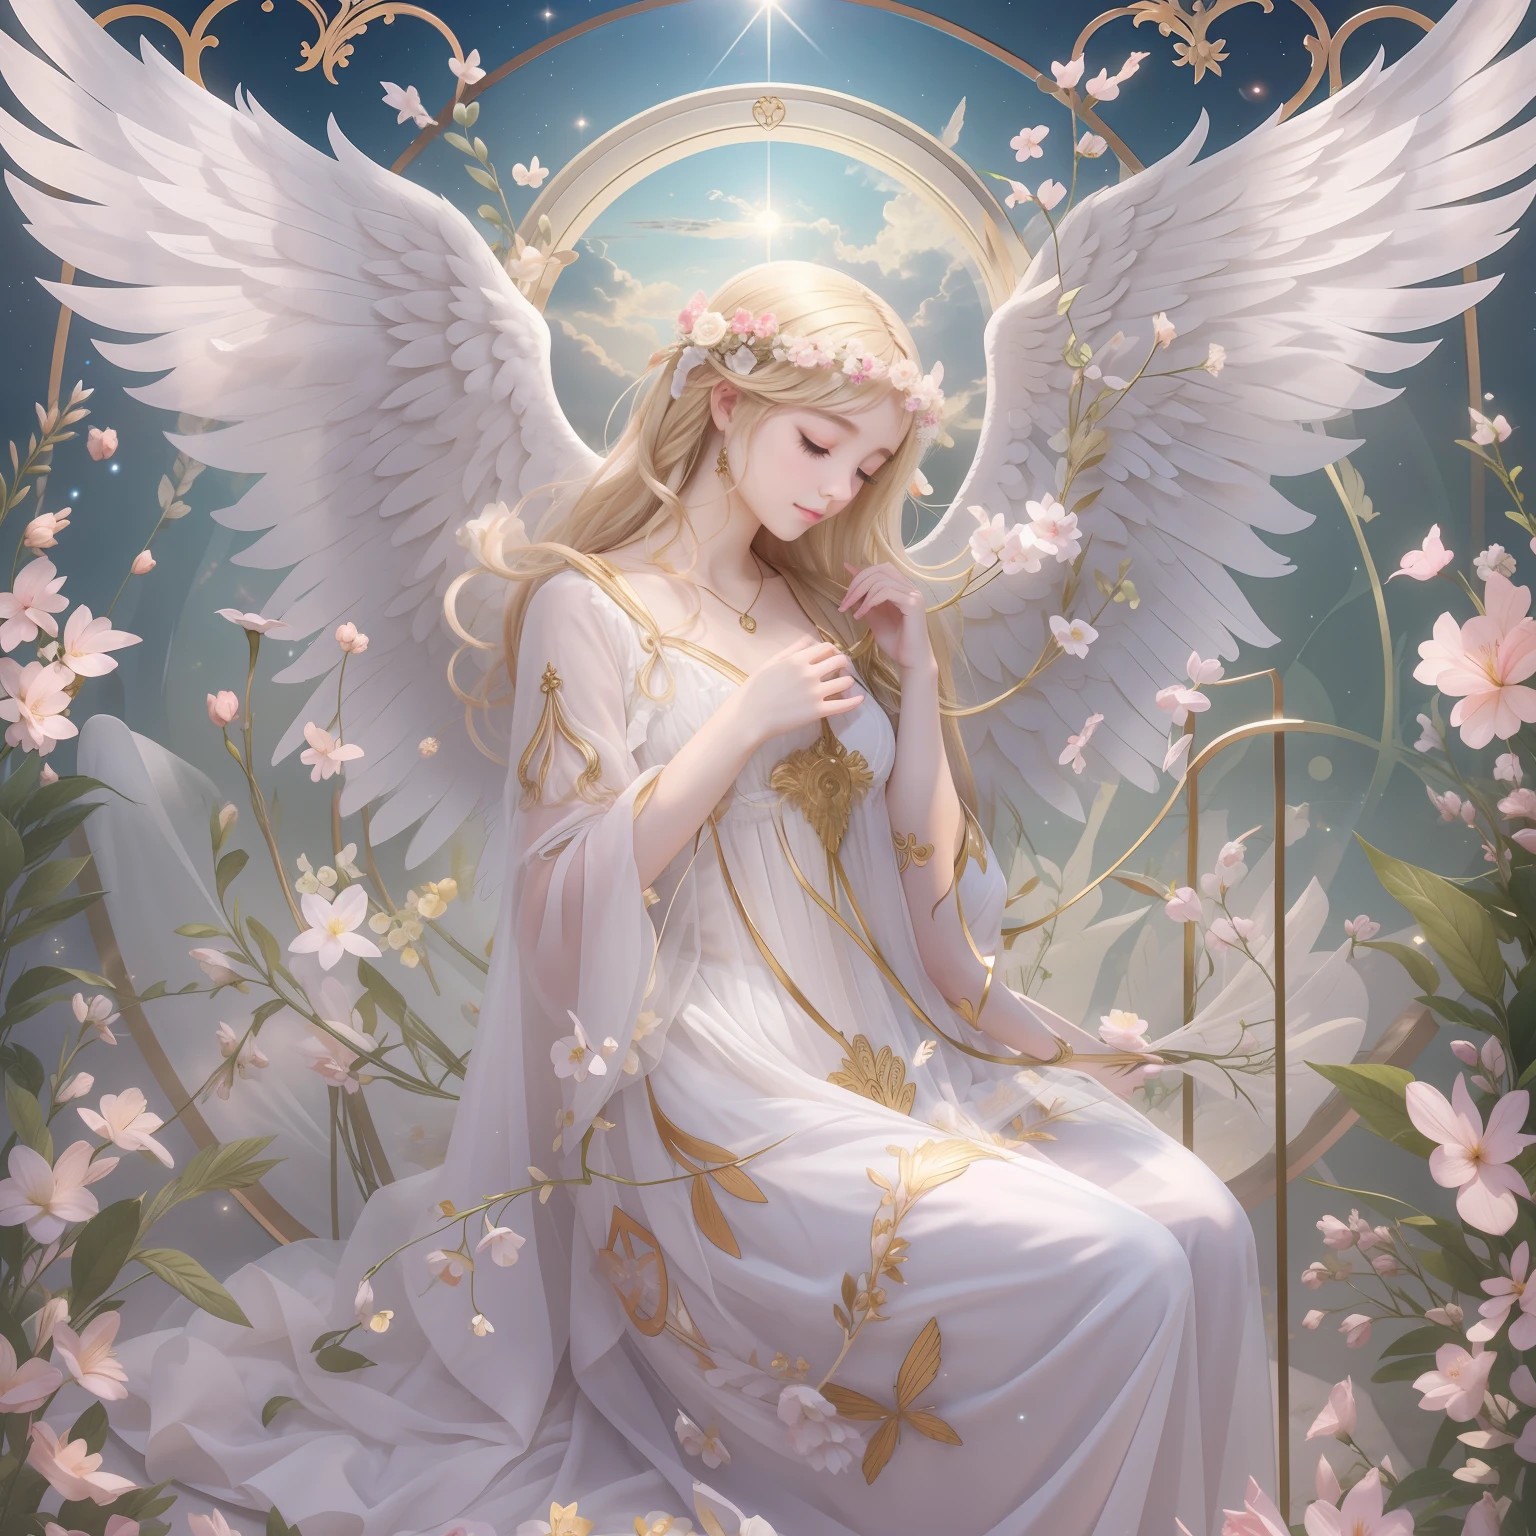 투명한 천사、가장 아름다운 천사들、판타스틱 엔젤、코스모스